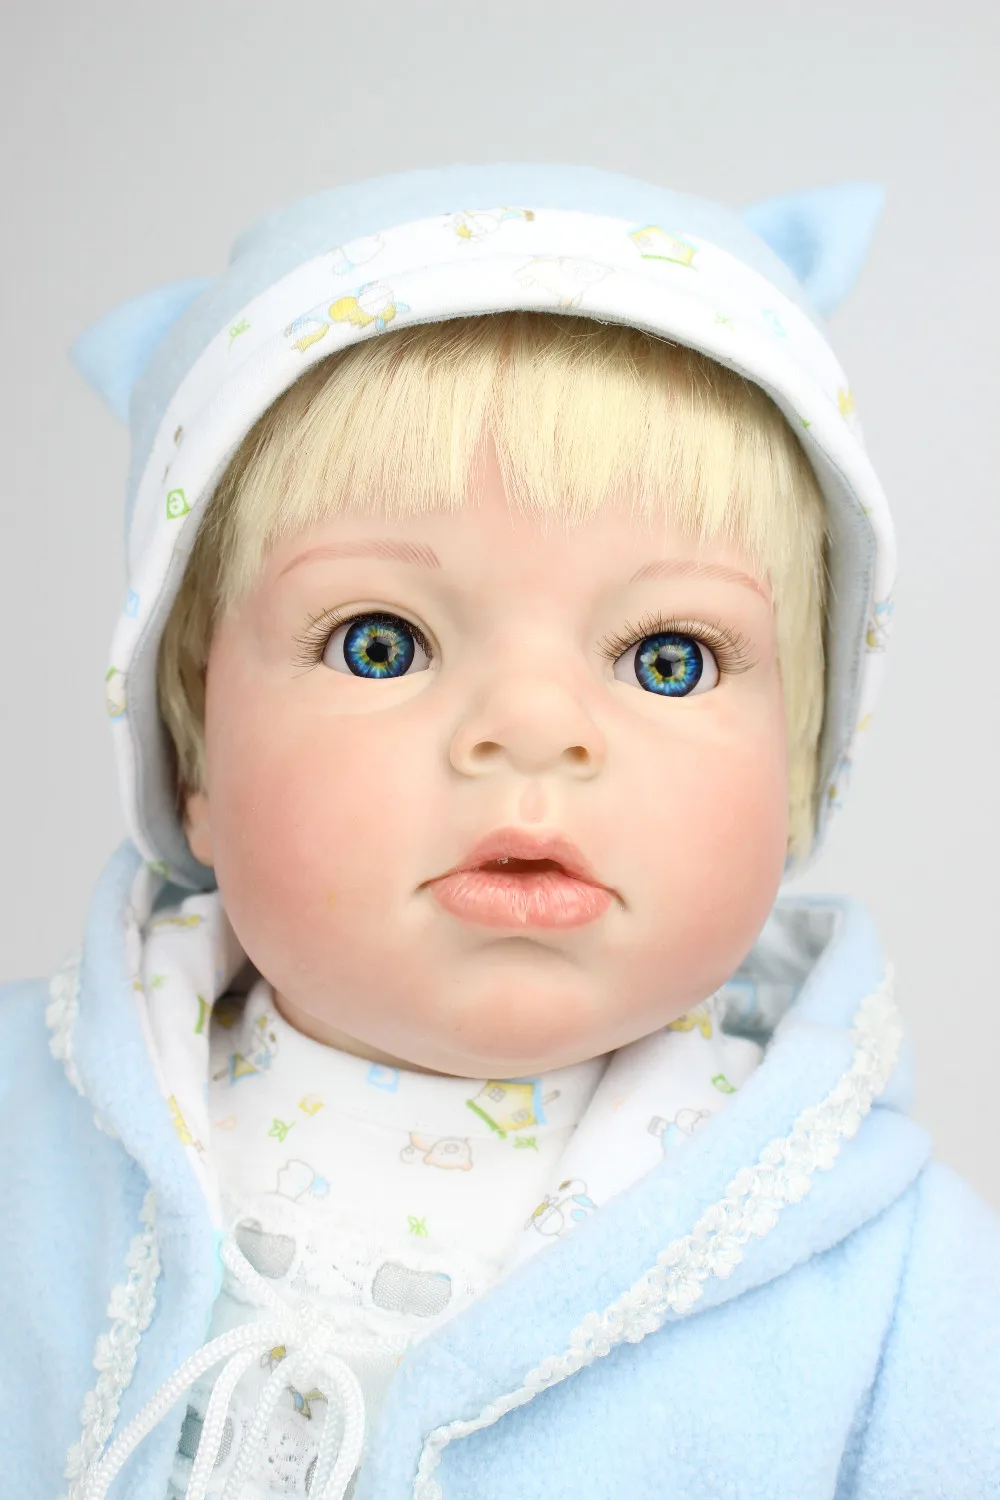 NPK реалистичные около 2" 70 см ручной работы реалистичные Новорожденные куклы реборн Мягкие силиконовые виниловые игрушки подарок для девочки или мальчика